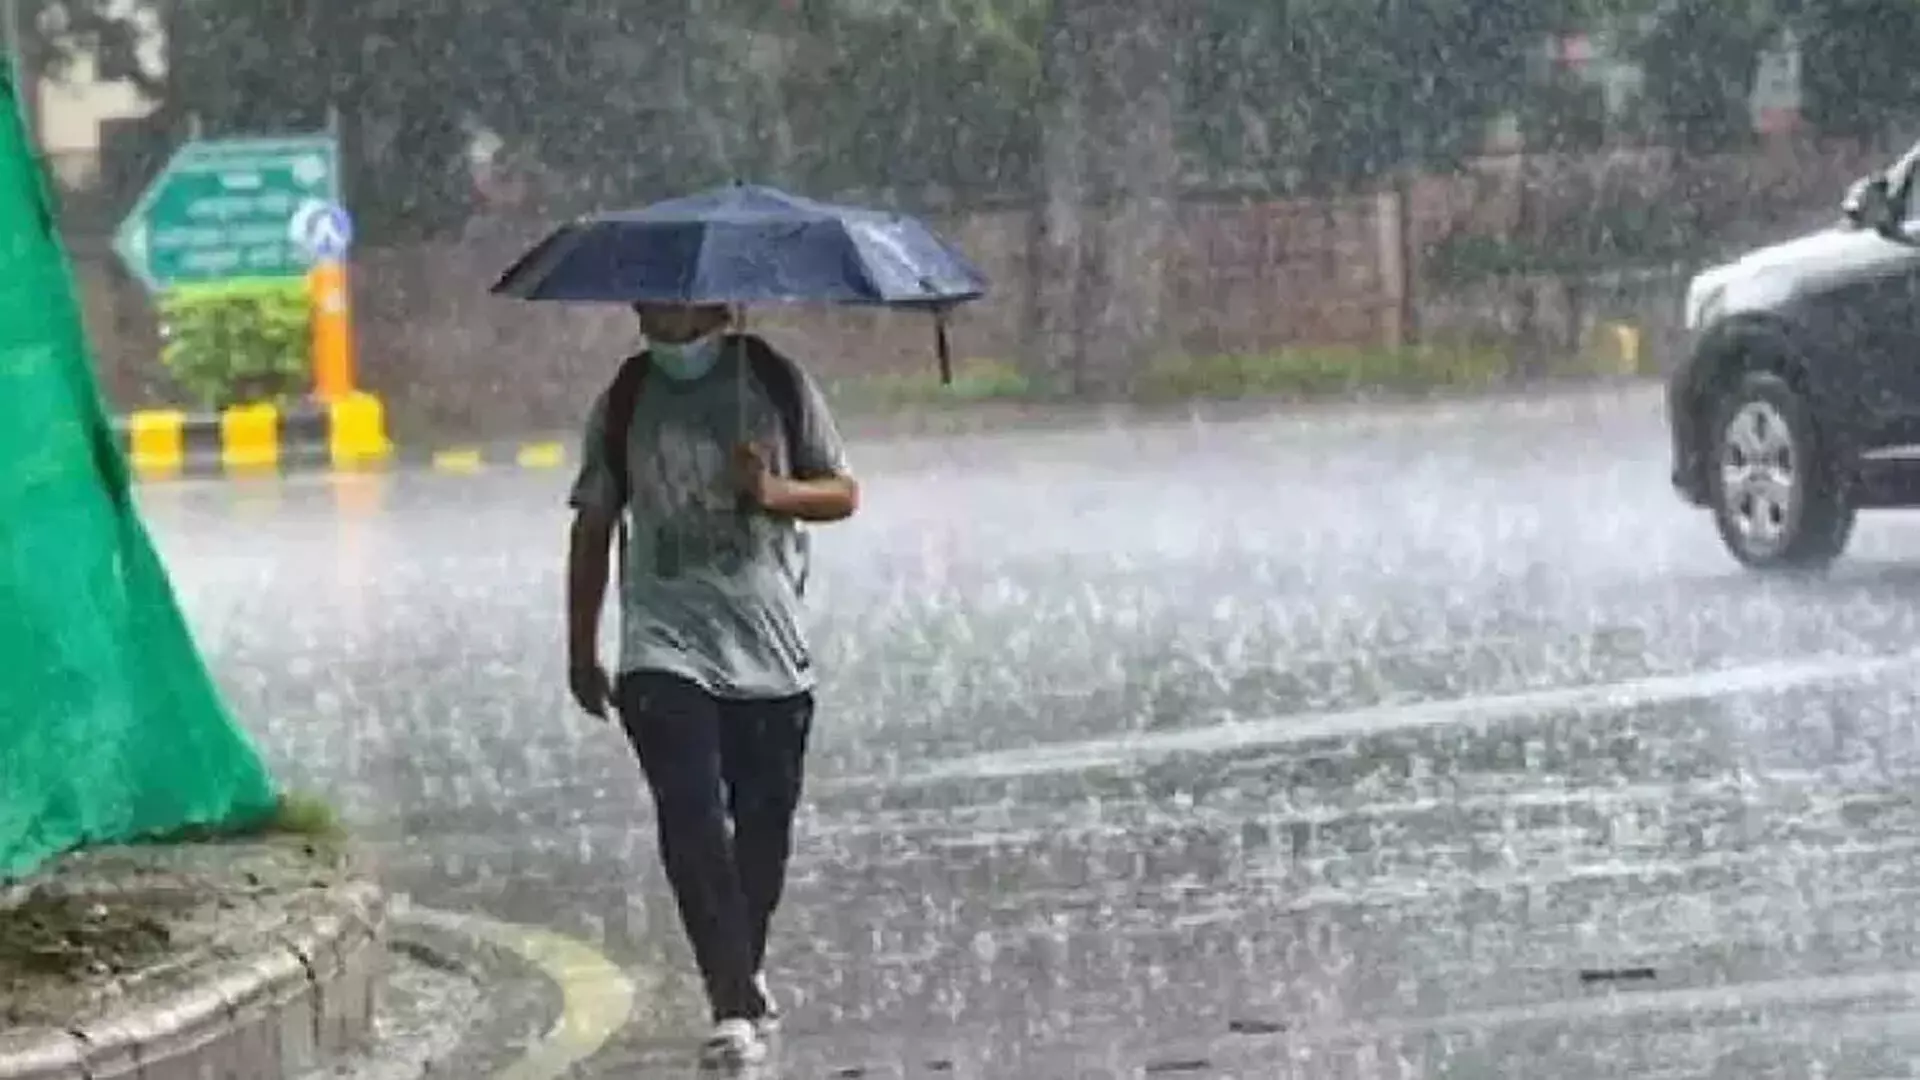 Meteorological Department का अनुमान, तमिलनाडु के 7 जिलों में मध्यम बारिश की संभावना